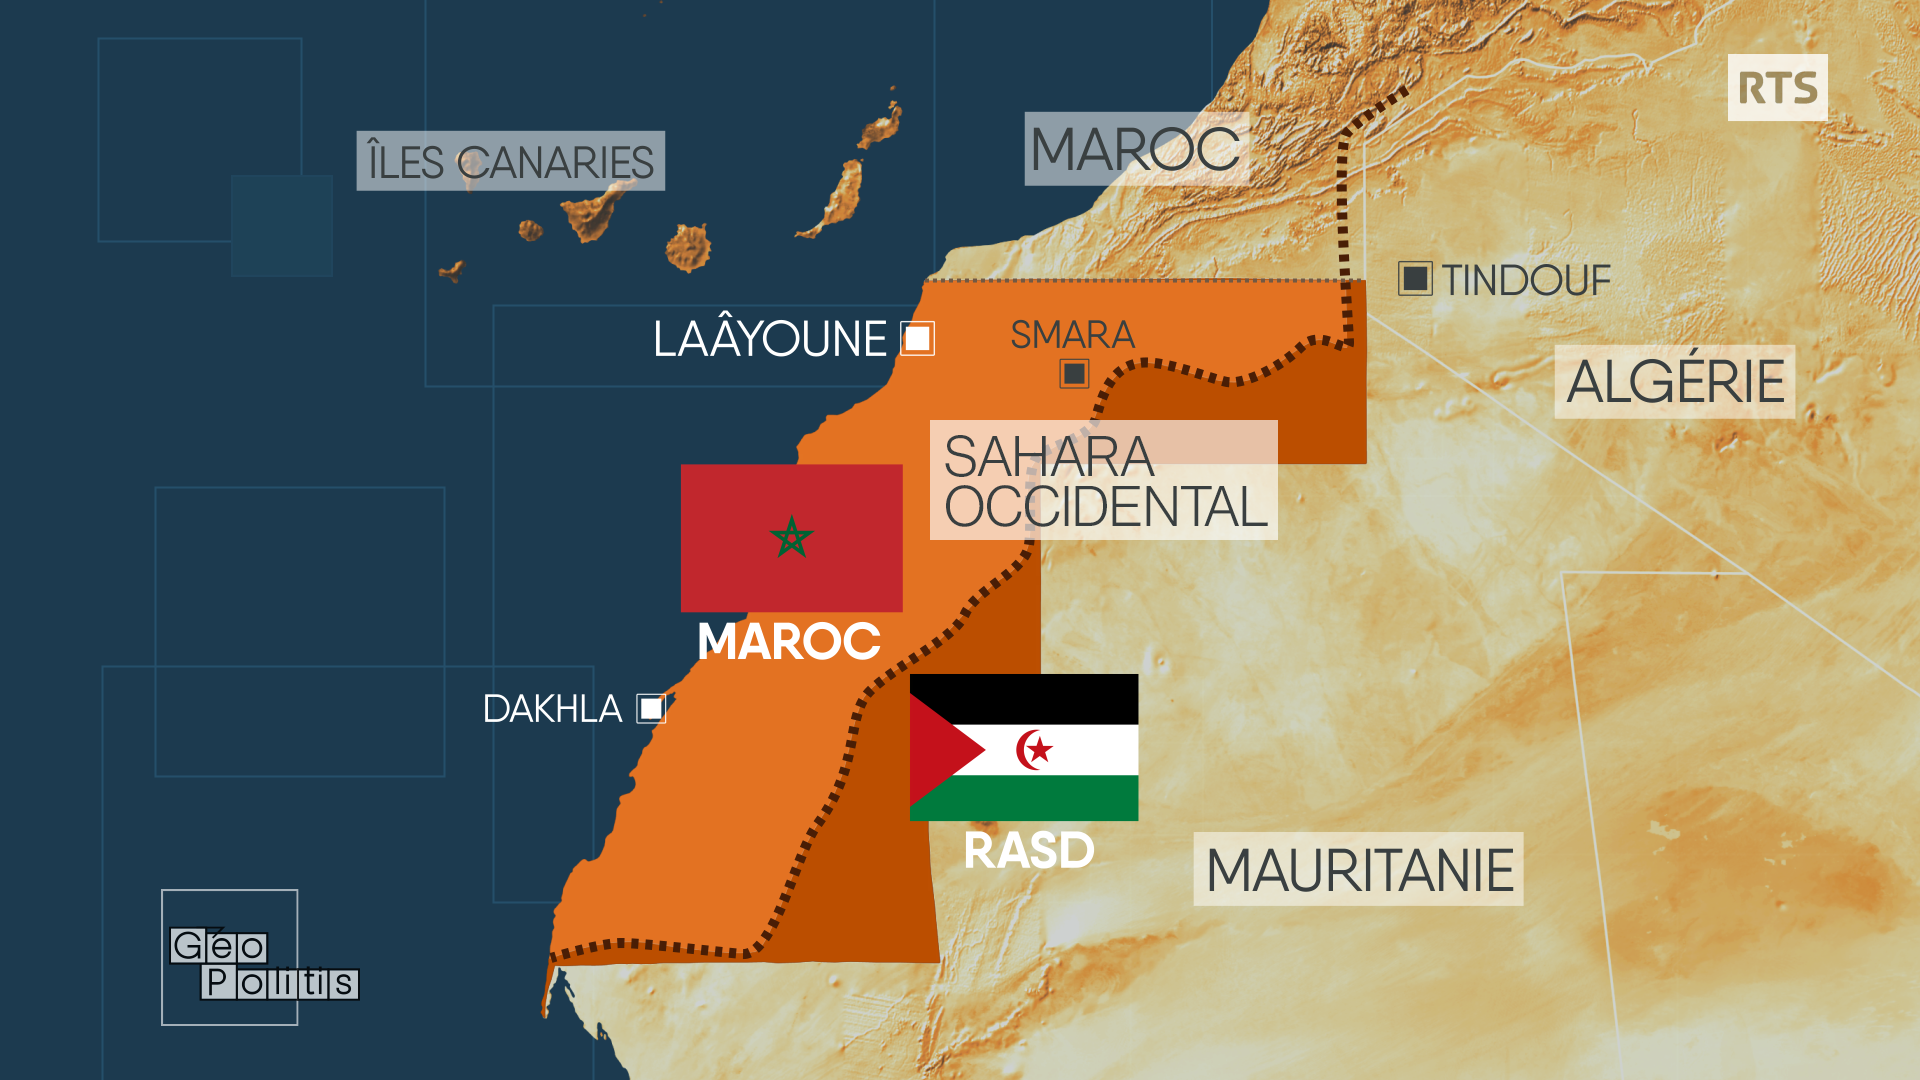 Le Maroc contrôle aujourd'hui 80% du Sahara occidental. Au-delà, de vastes étendues de sable sont considérées par le Front Polisario comme "territoires libérés" de la République arabe sahraouie démocratique. Les deux territoires sont séparés par un mur de sable long de 2500 km. [RTS - Géopolitis]